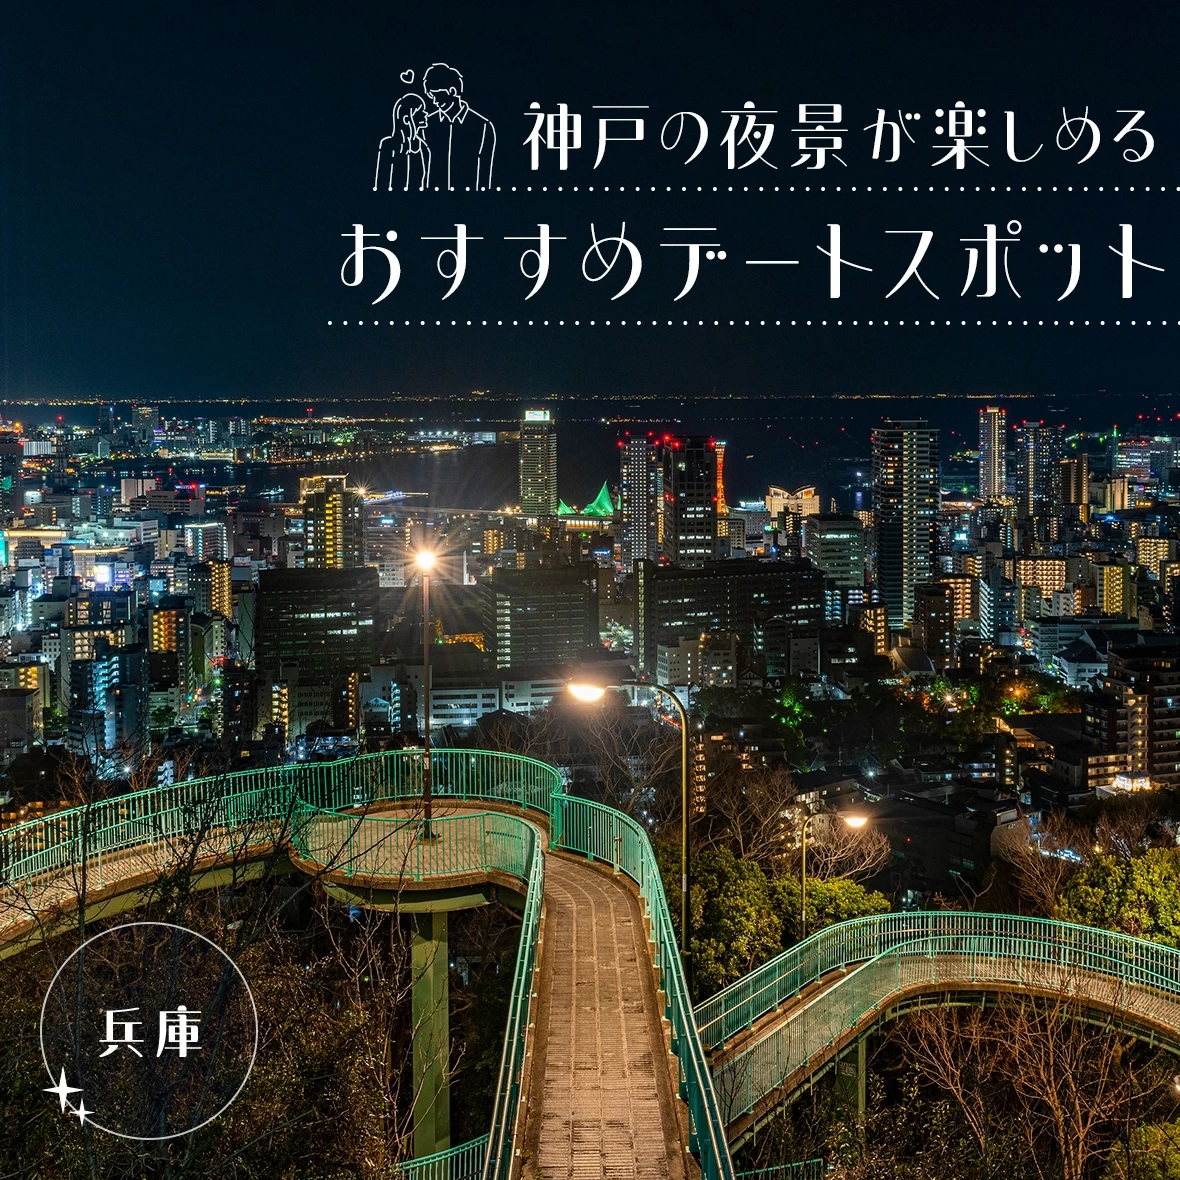 【兵庫観光】神戸の夜景が楽しめるおすすめデートスポット11選